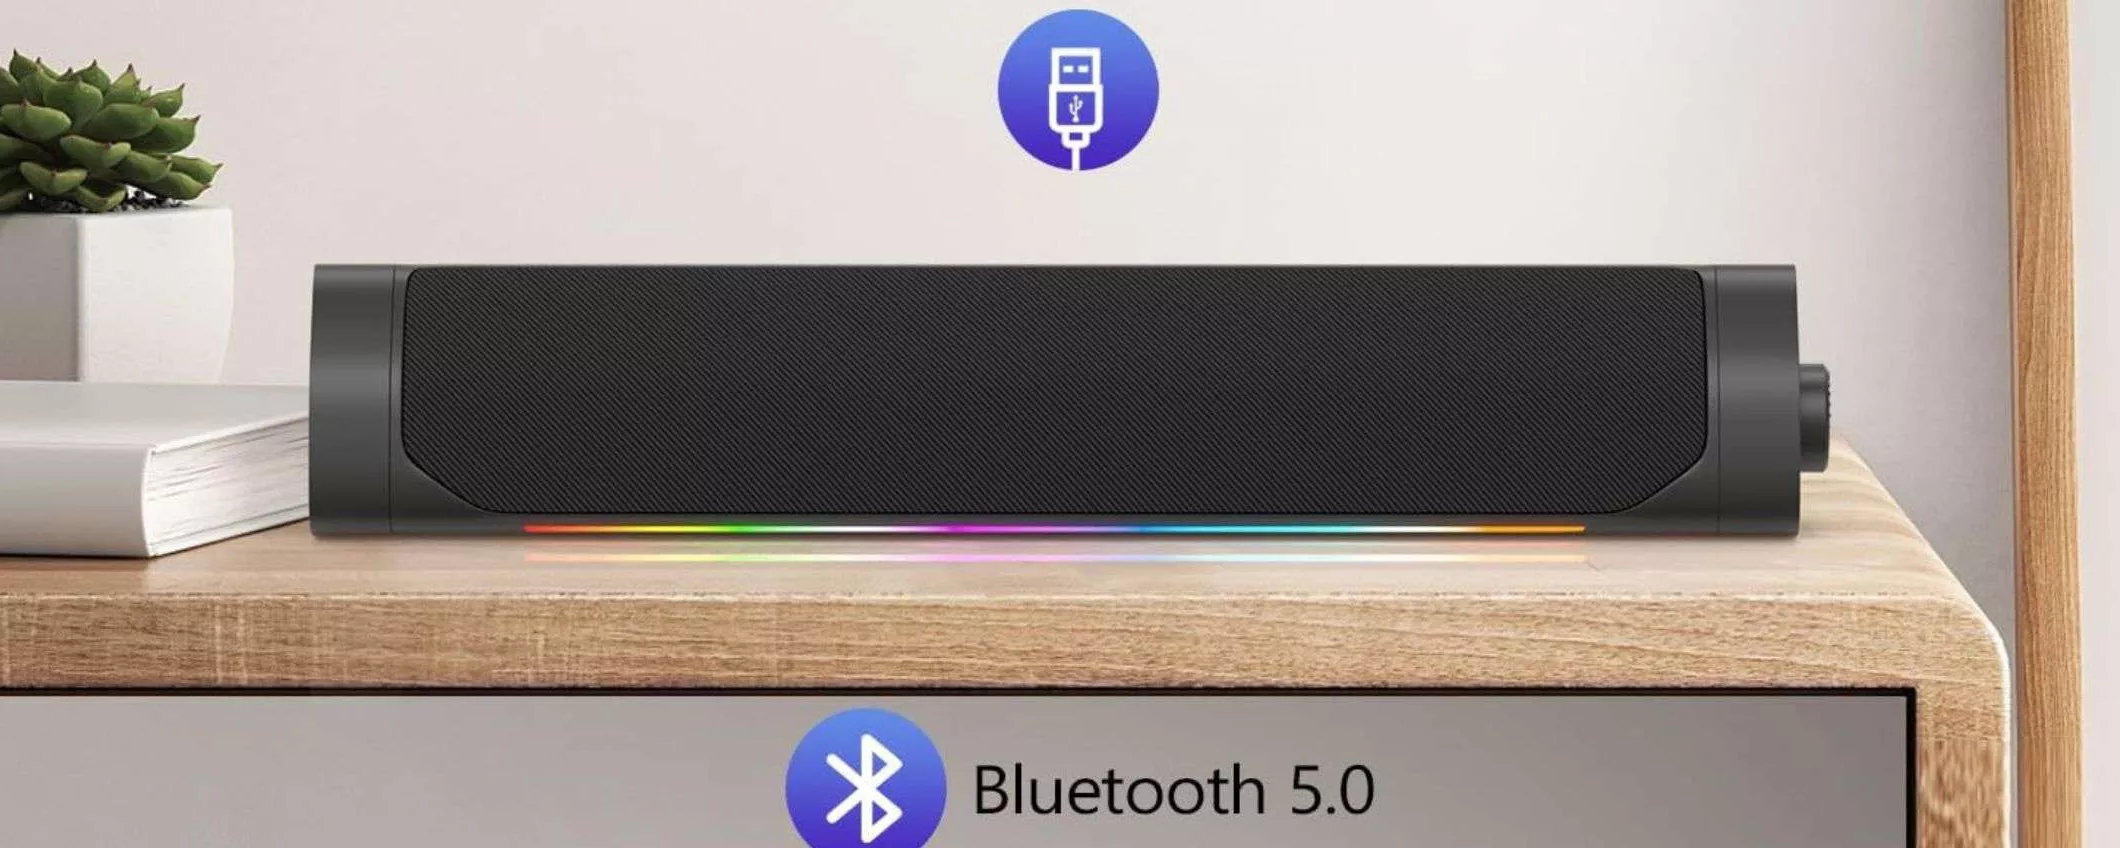 Soundbar Bluetooth a 26,99€: compatta e POTENTE, prezzo SHOCK (Amazon)